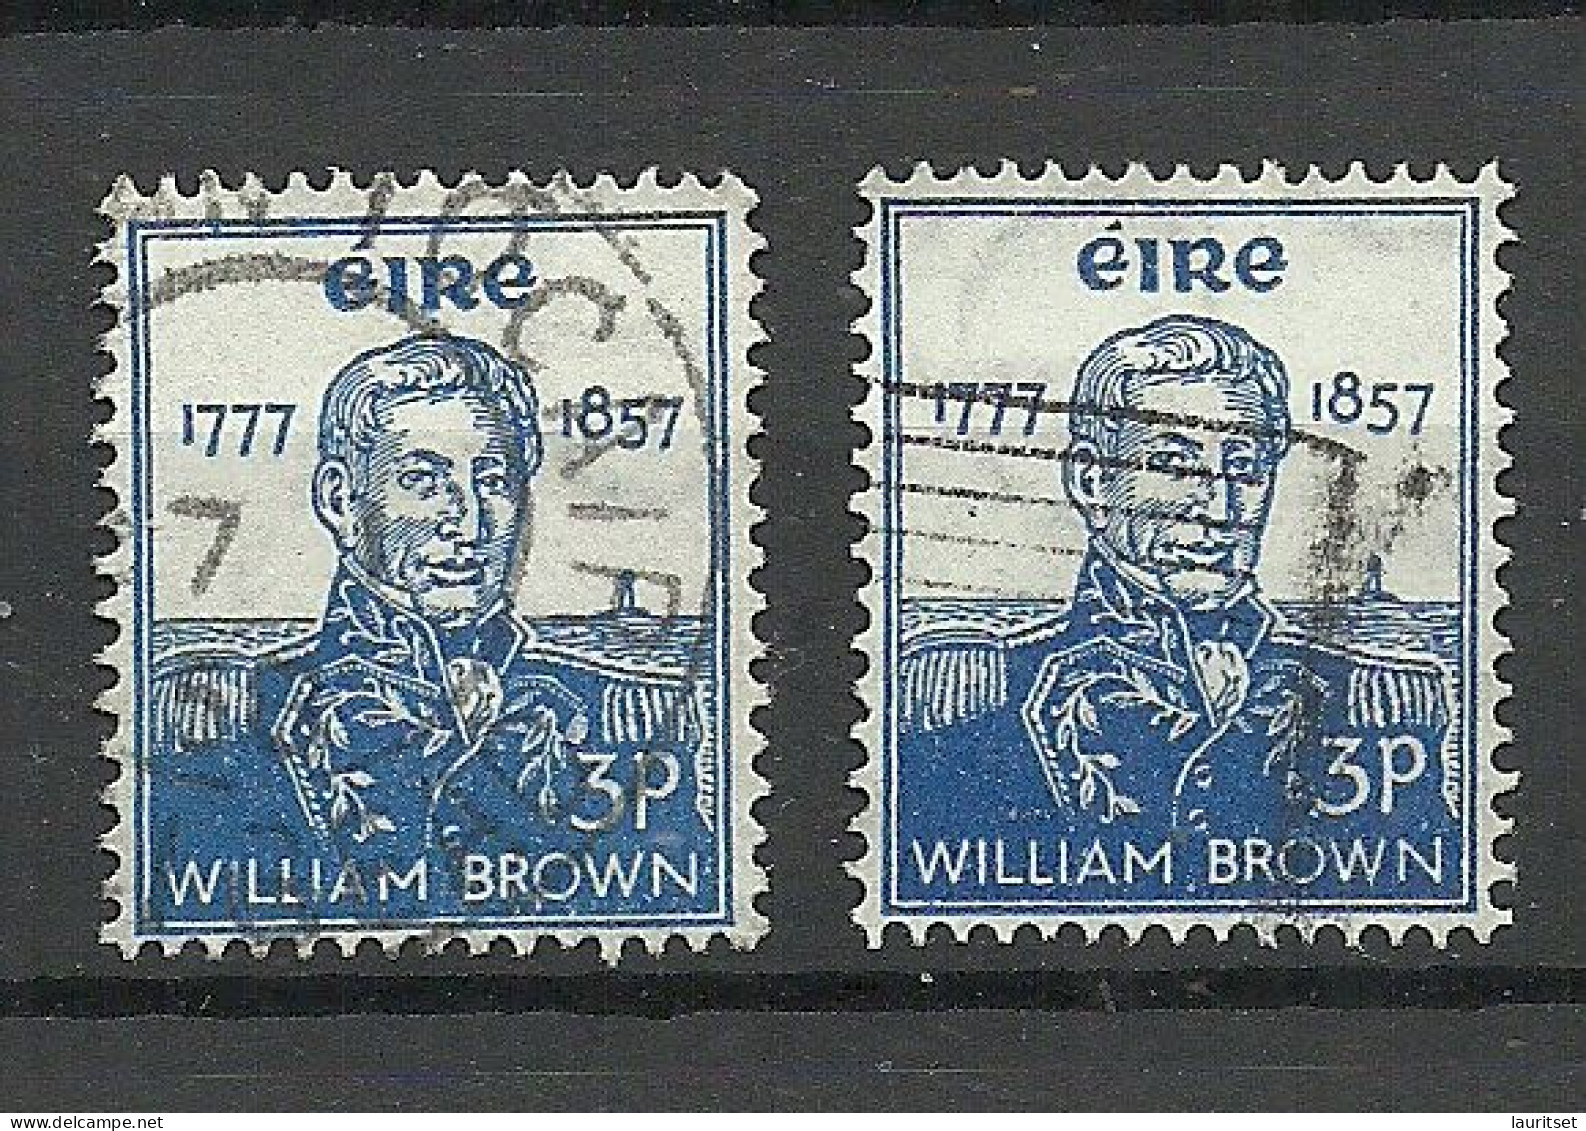 IRLAND IRELAND 1957 Michel 132 O William Brown. 2 Exemplares - Usati